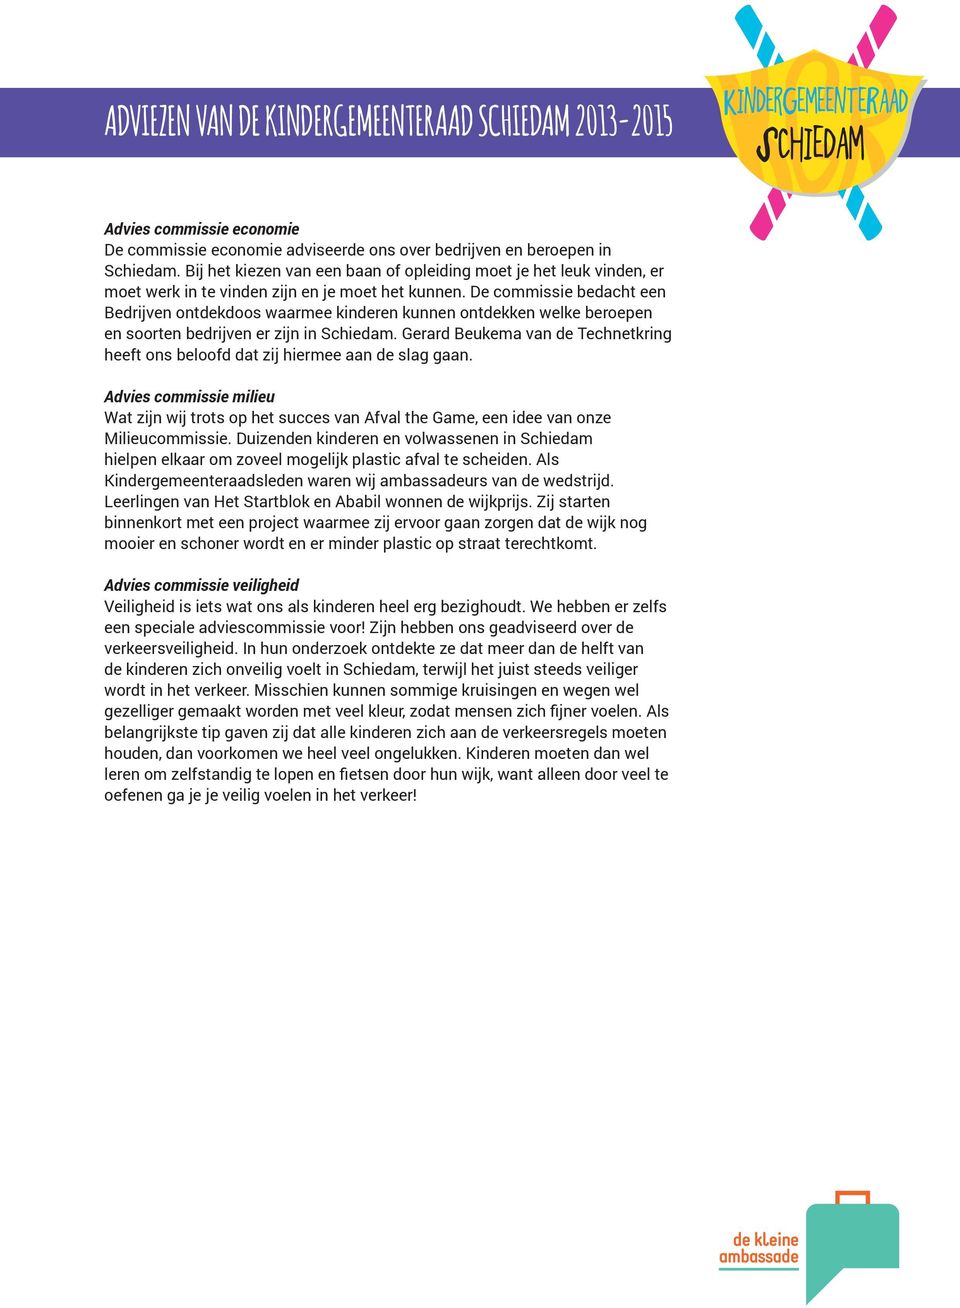 De commissie bedacht een Bedrijven ontdekdoos waarmee kinderen kunnen ontdekken welke beroepen en soorten bedrijven er zijn in Schiedam.